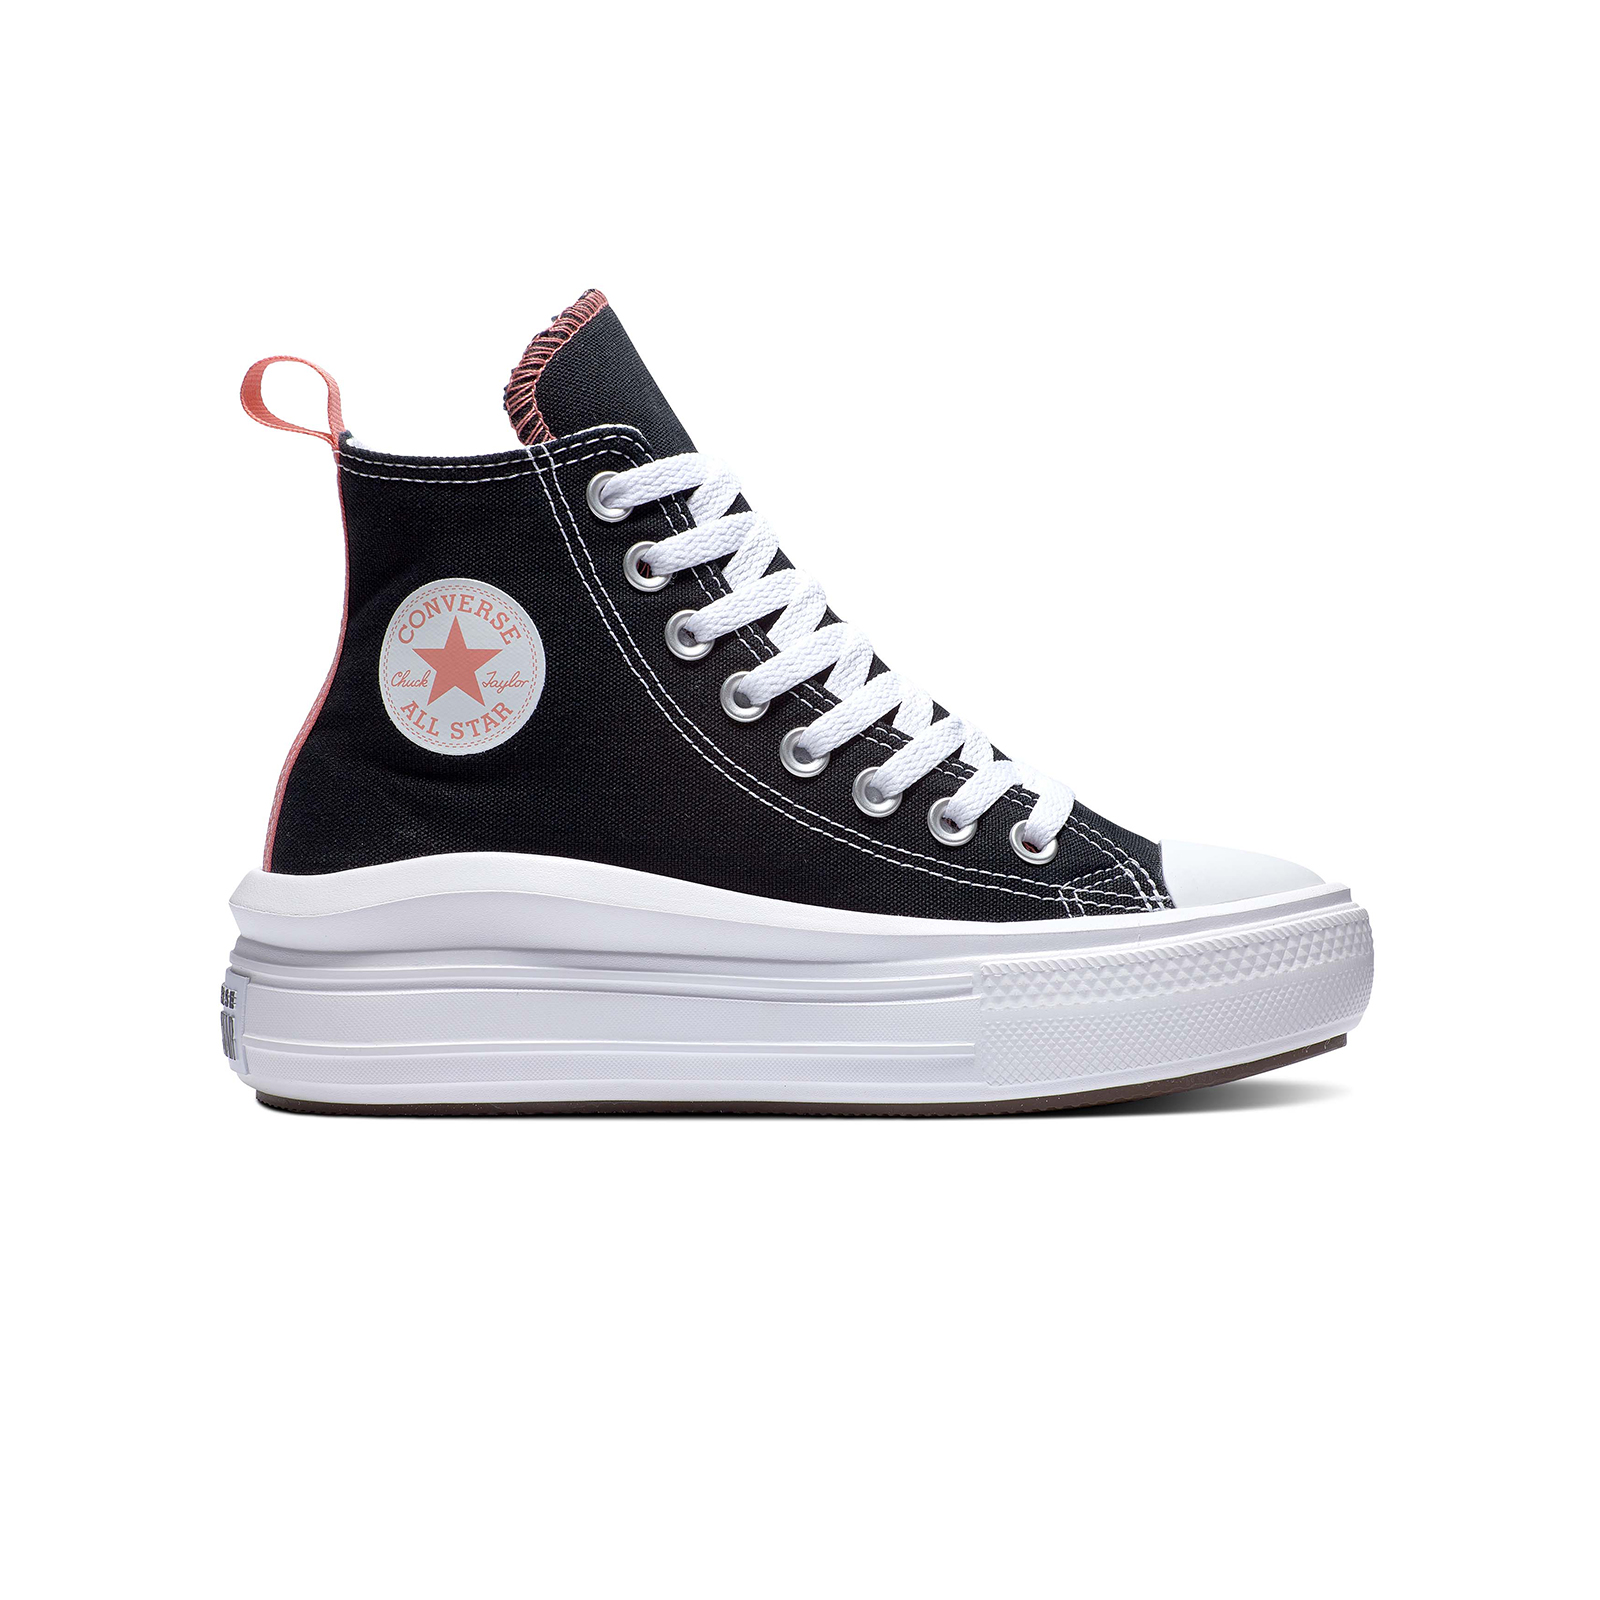 Παιδικά > Παπούτσια > Sneaker > Μποτάκι High Cut Converse - CHUCK TAYLOR ALL STAR MOVE - 001-BLACK/PINK SALT/WHITE